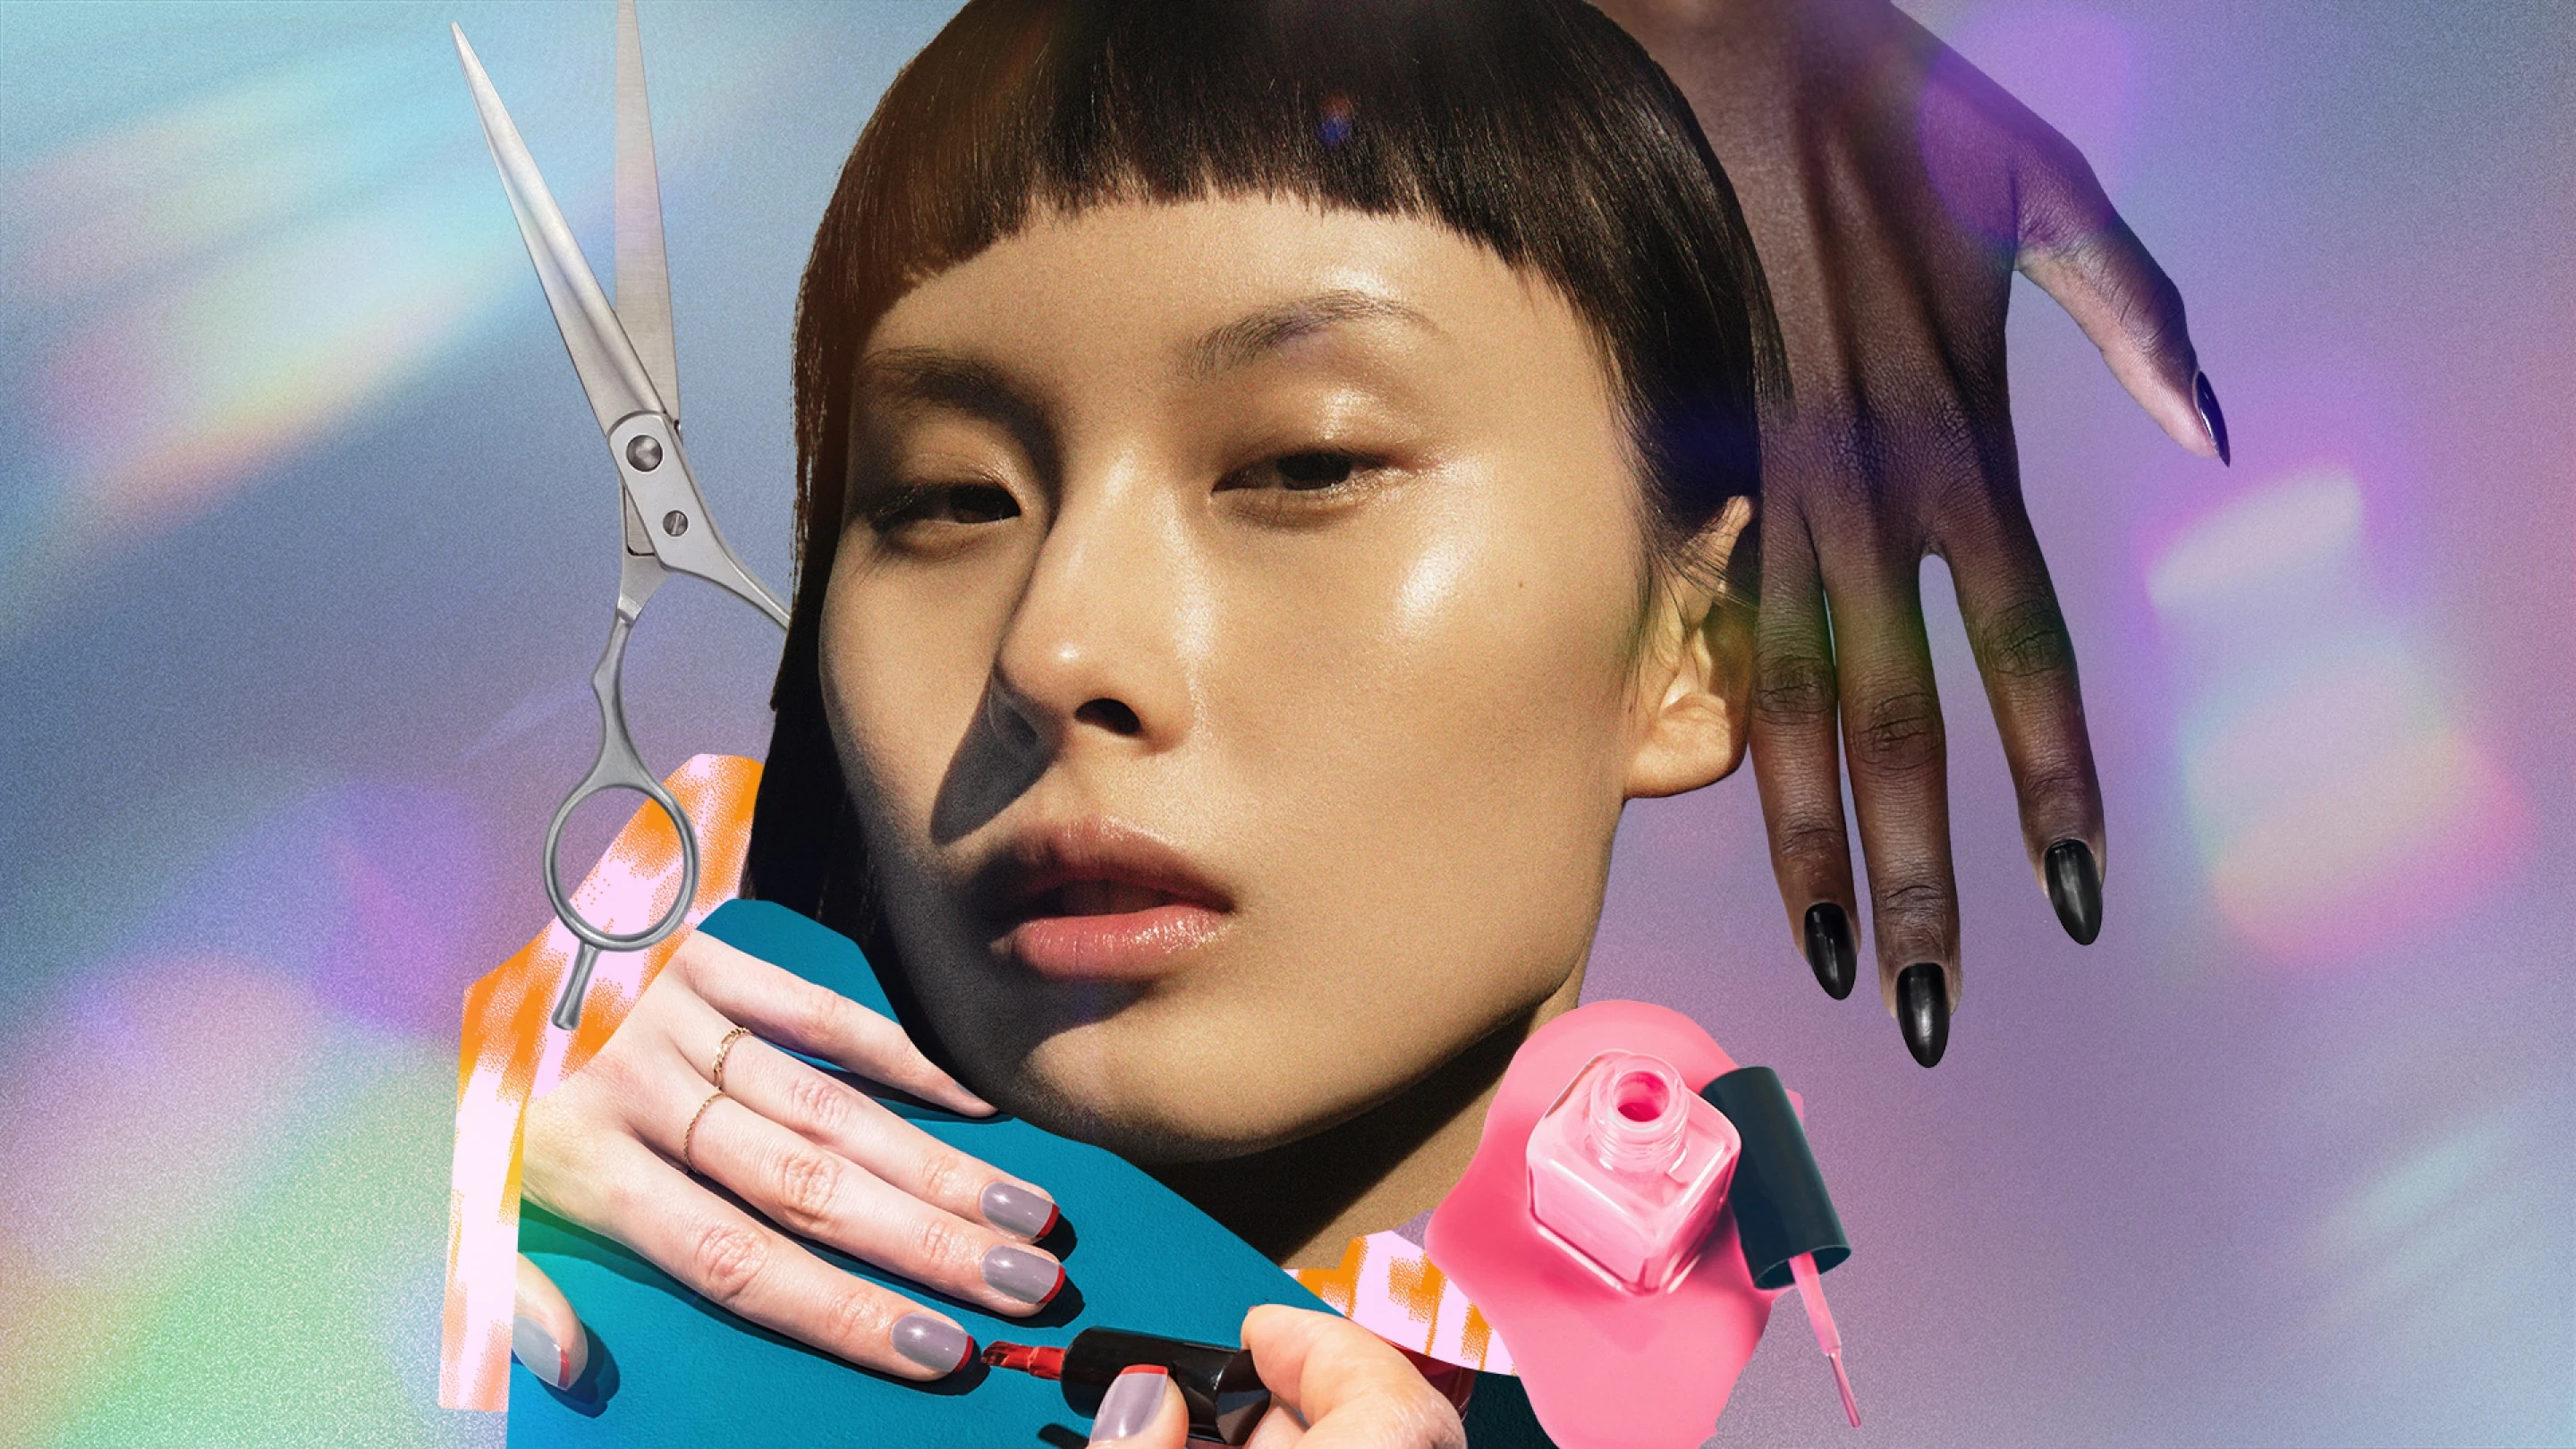 Collage di immagini raffiguranti vari esempi di bellezza micro come una mini frangia su una donna asiatica, manicure corte su due coppie di mani e forbici per capelli. 